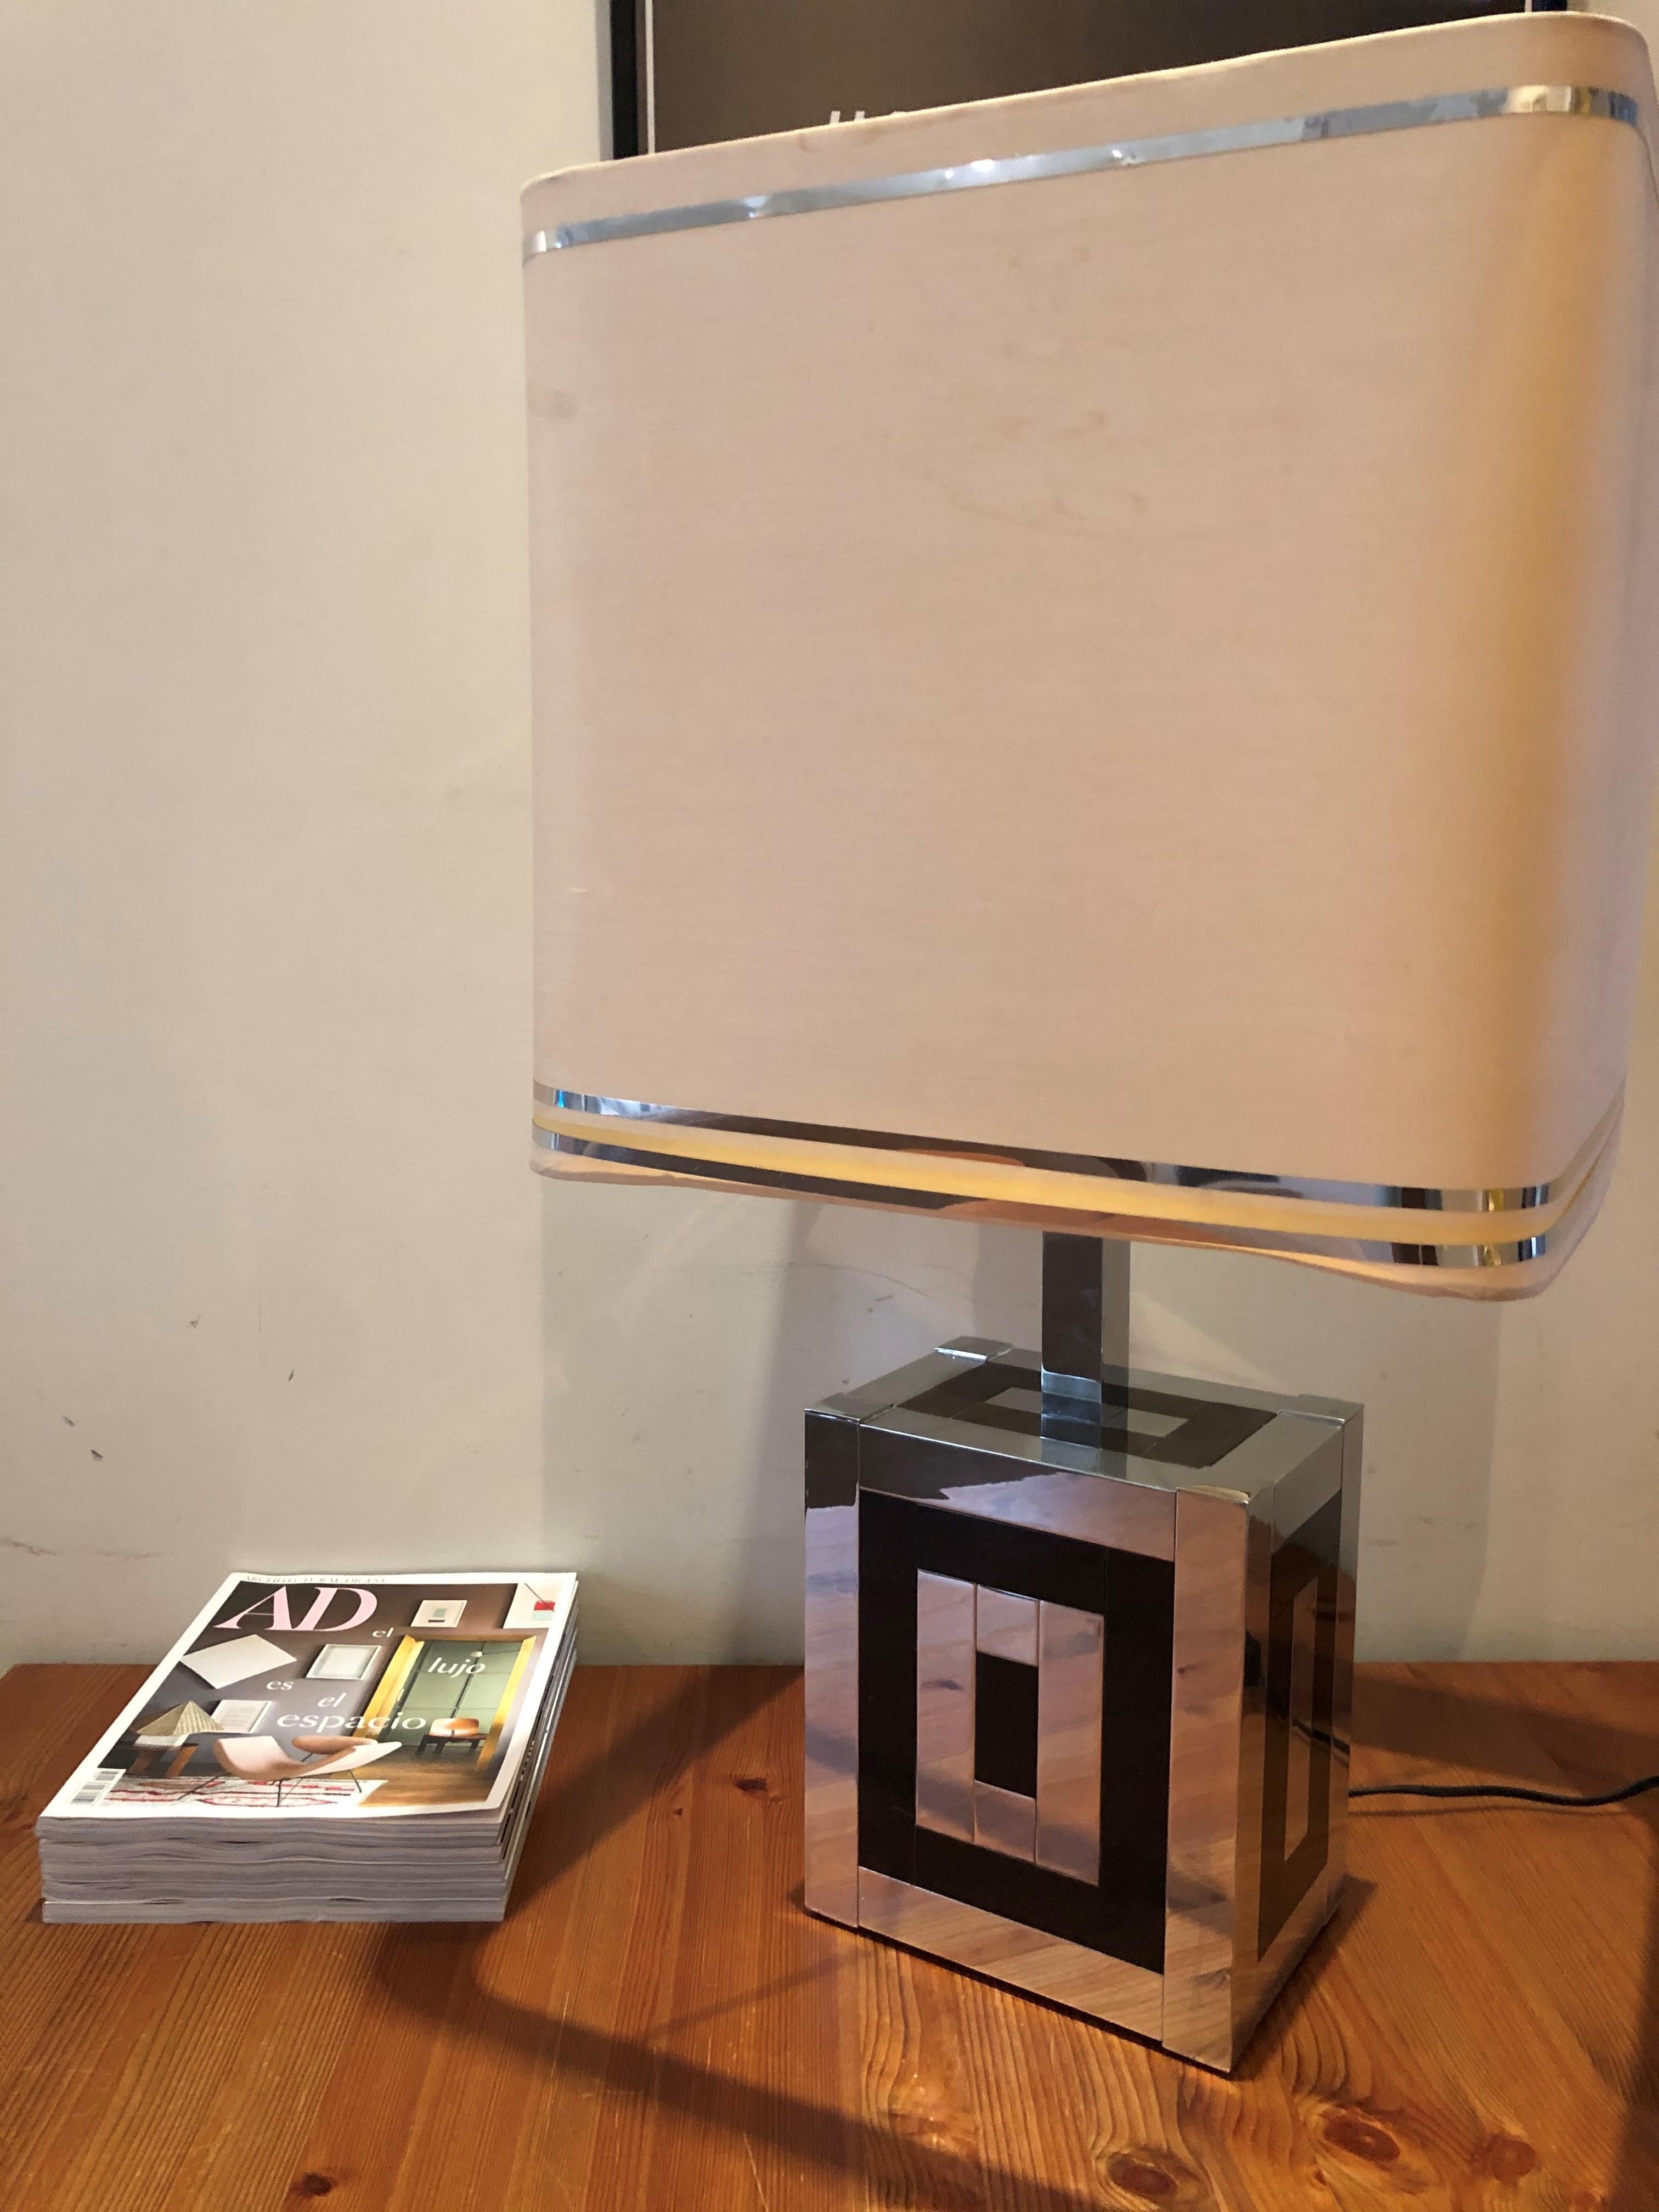 Lampe de table centrale du milieu du siècle dernier, datant des années 1970. Ce luminaire a été conçu par Willy Rizzo et fabriqué dans les années 1970 à Barcelone par 